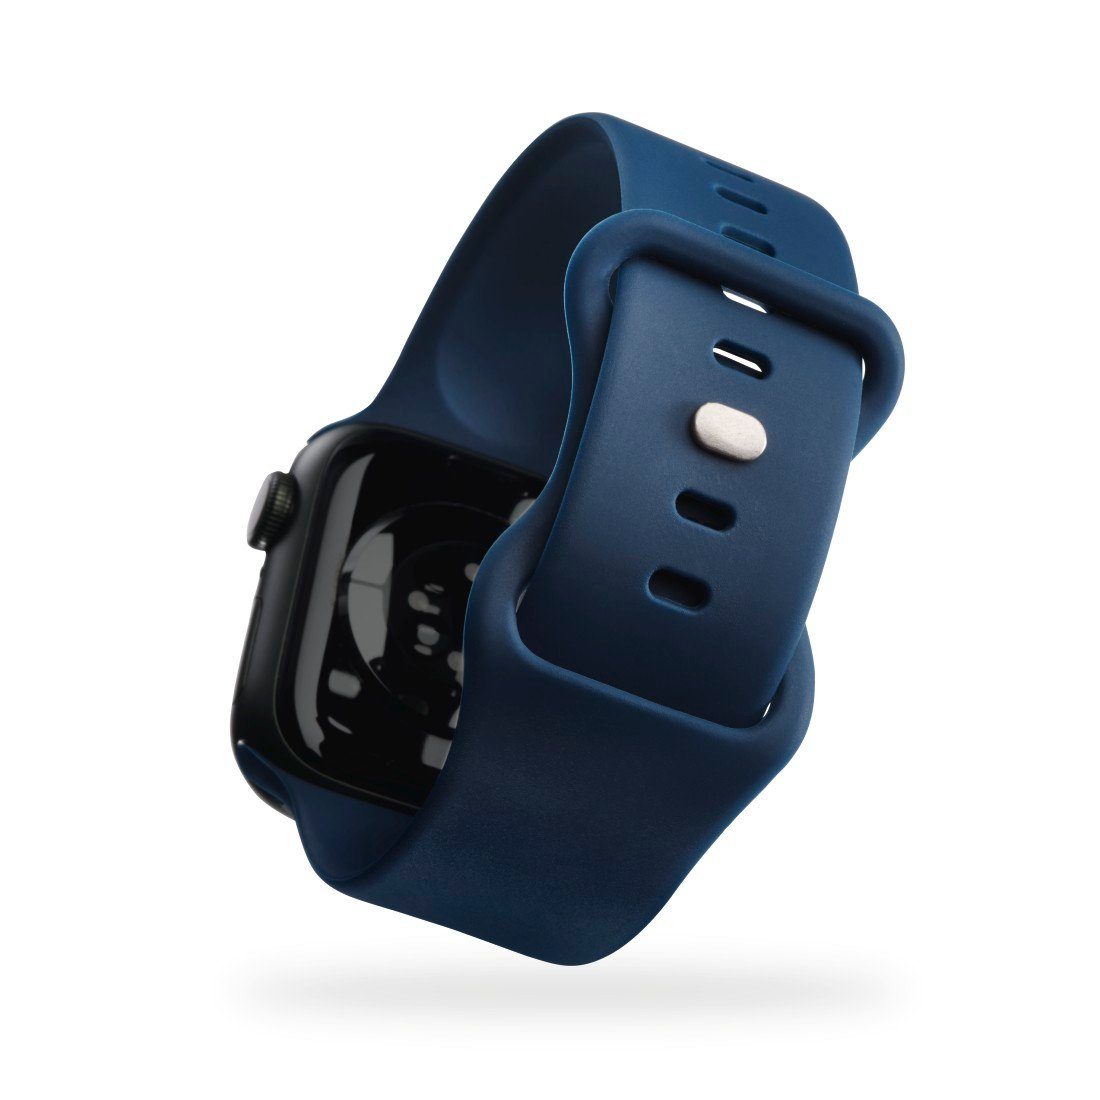 Watch 4, mm, 8, und 40 6, 41 Wechselarmband dunkelblau 1 Watch 9 Apple Silikon, 5, Watch 2, Apple für Apple mm, Hama mm, Druckknopf, 3, SE, 7, 38 Smartwatch-Armband